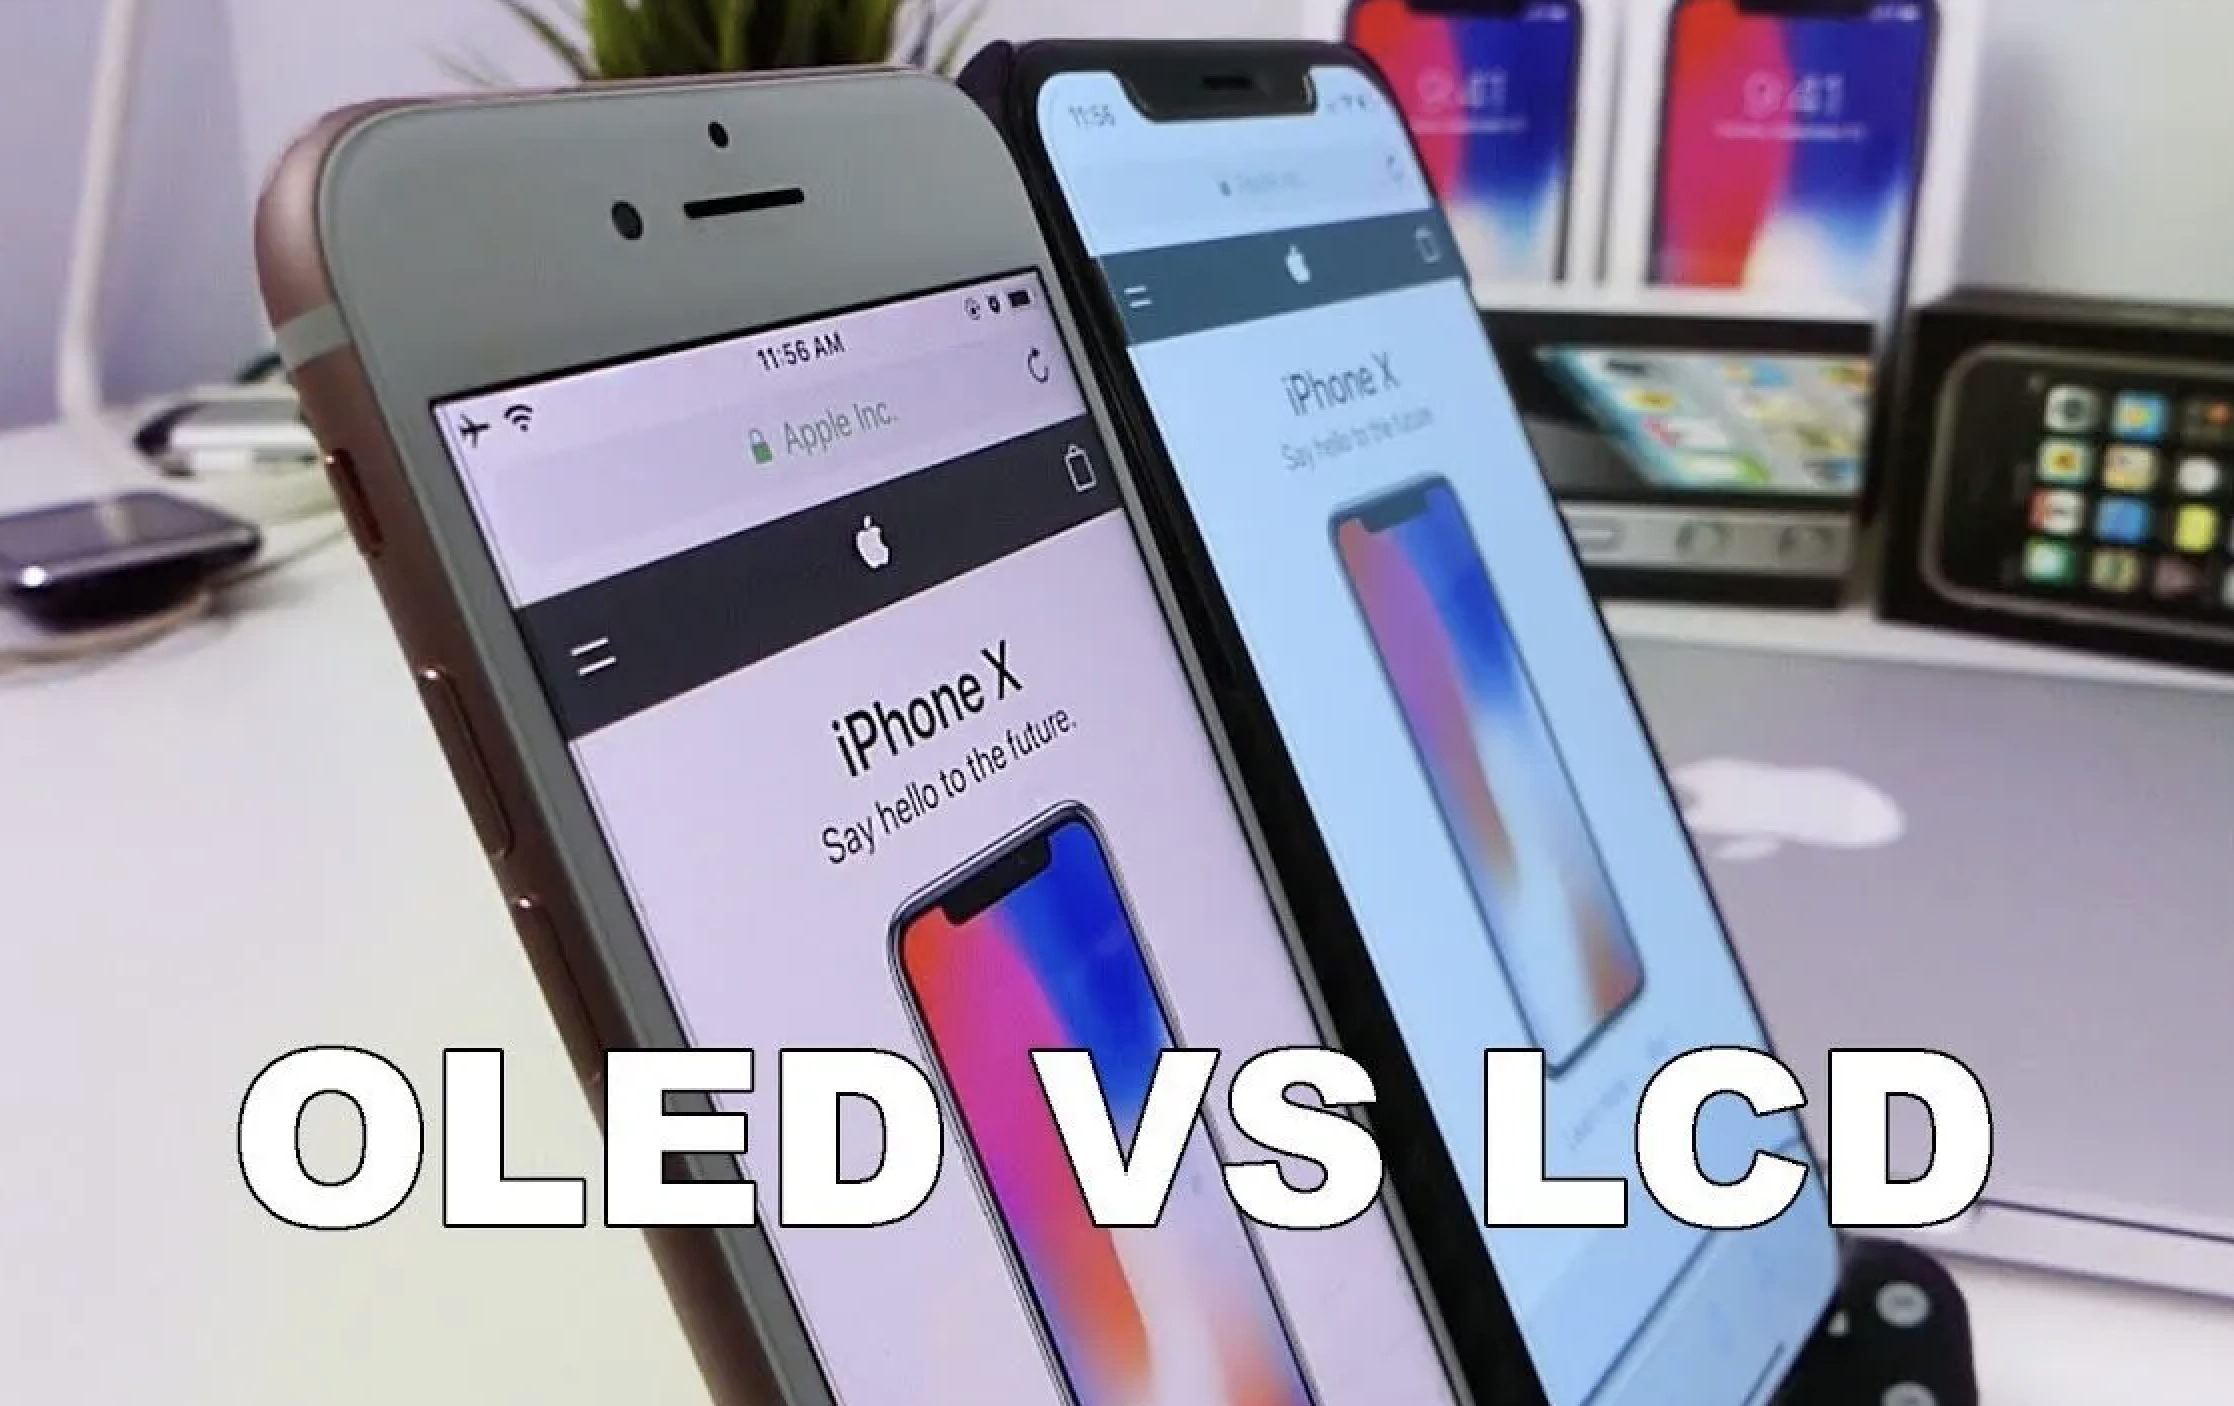 Je lepší OLED nebo LCD?